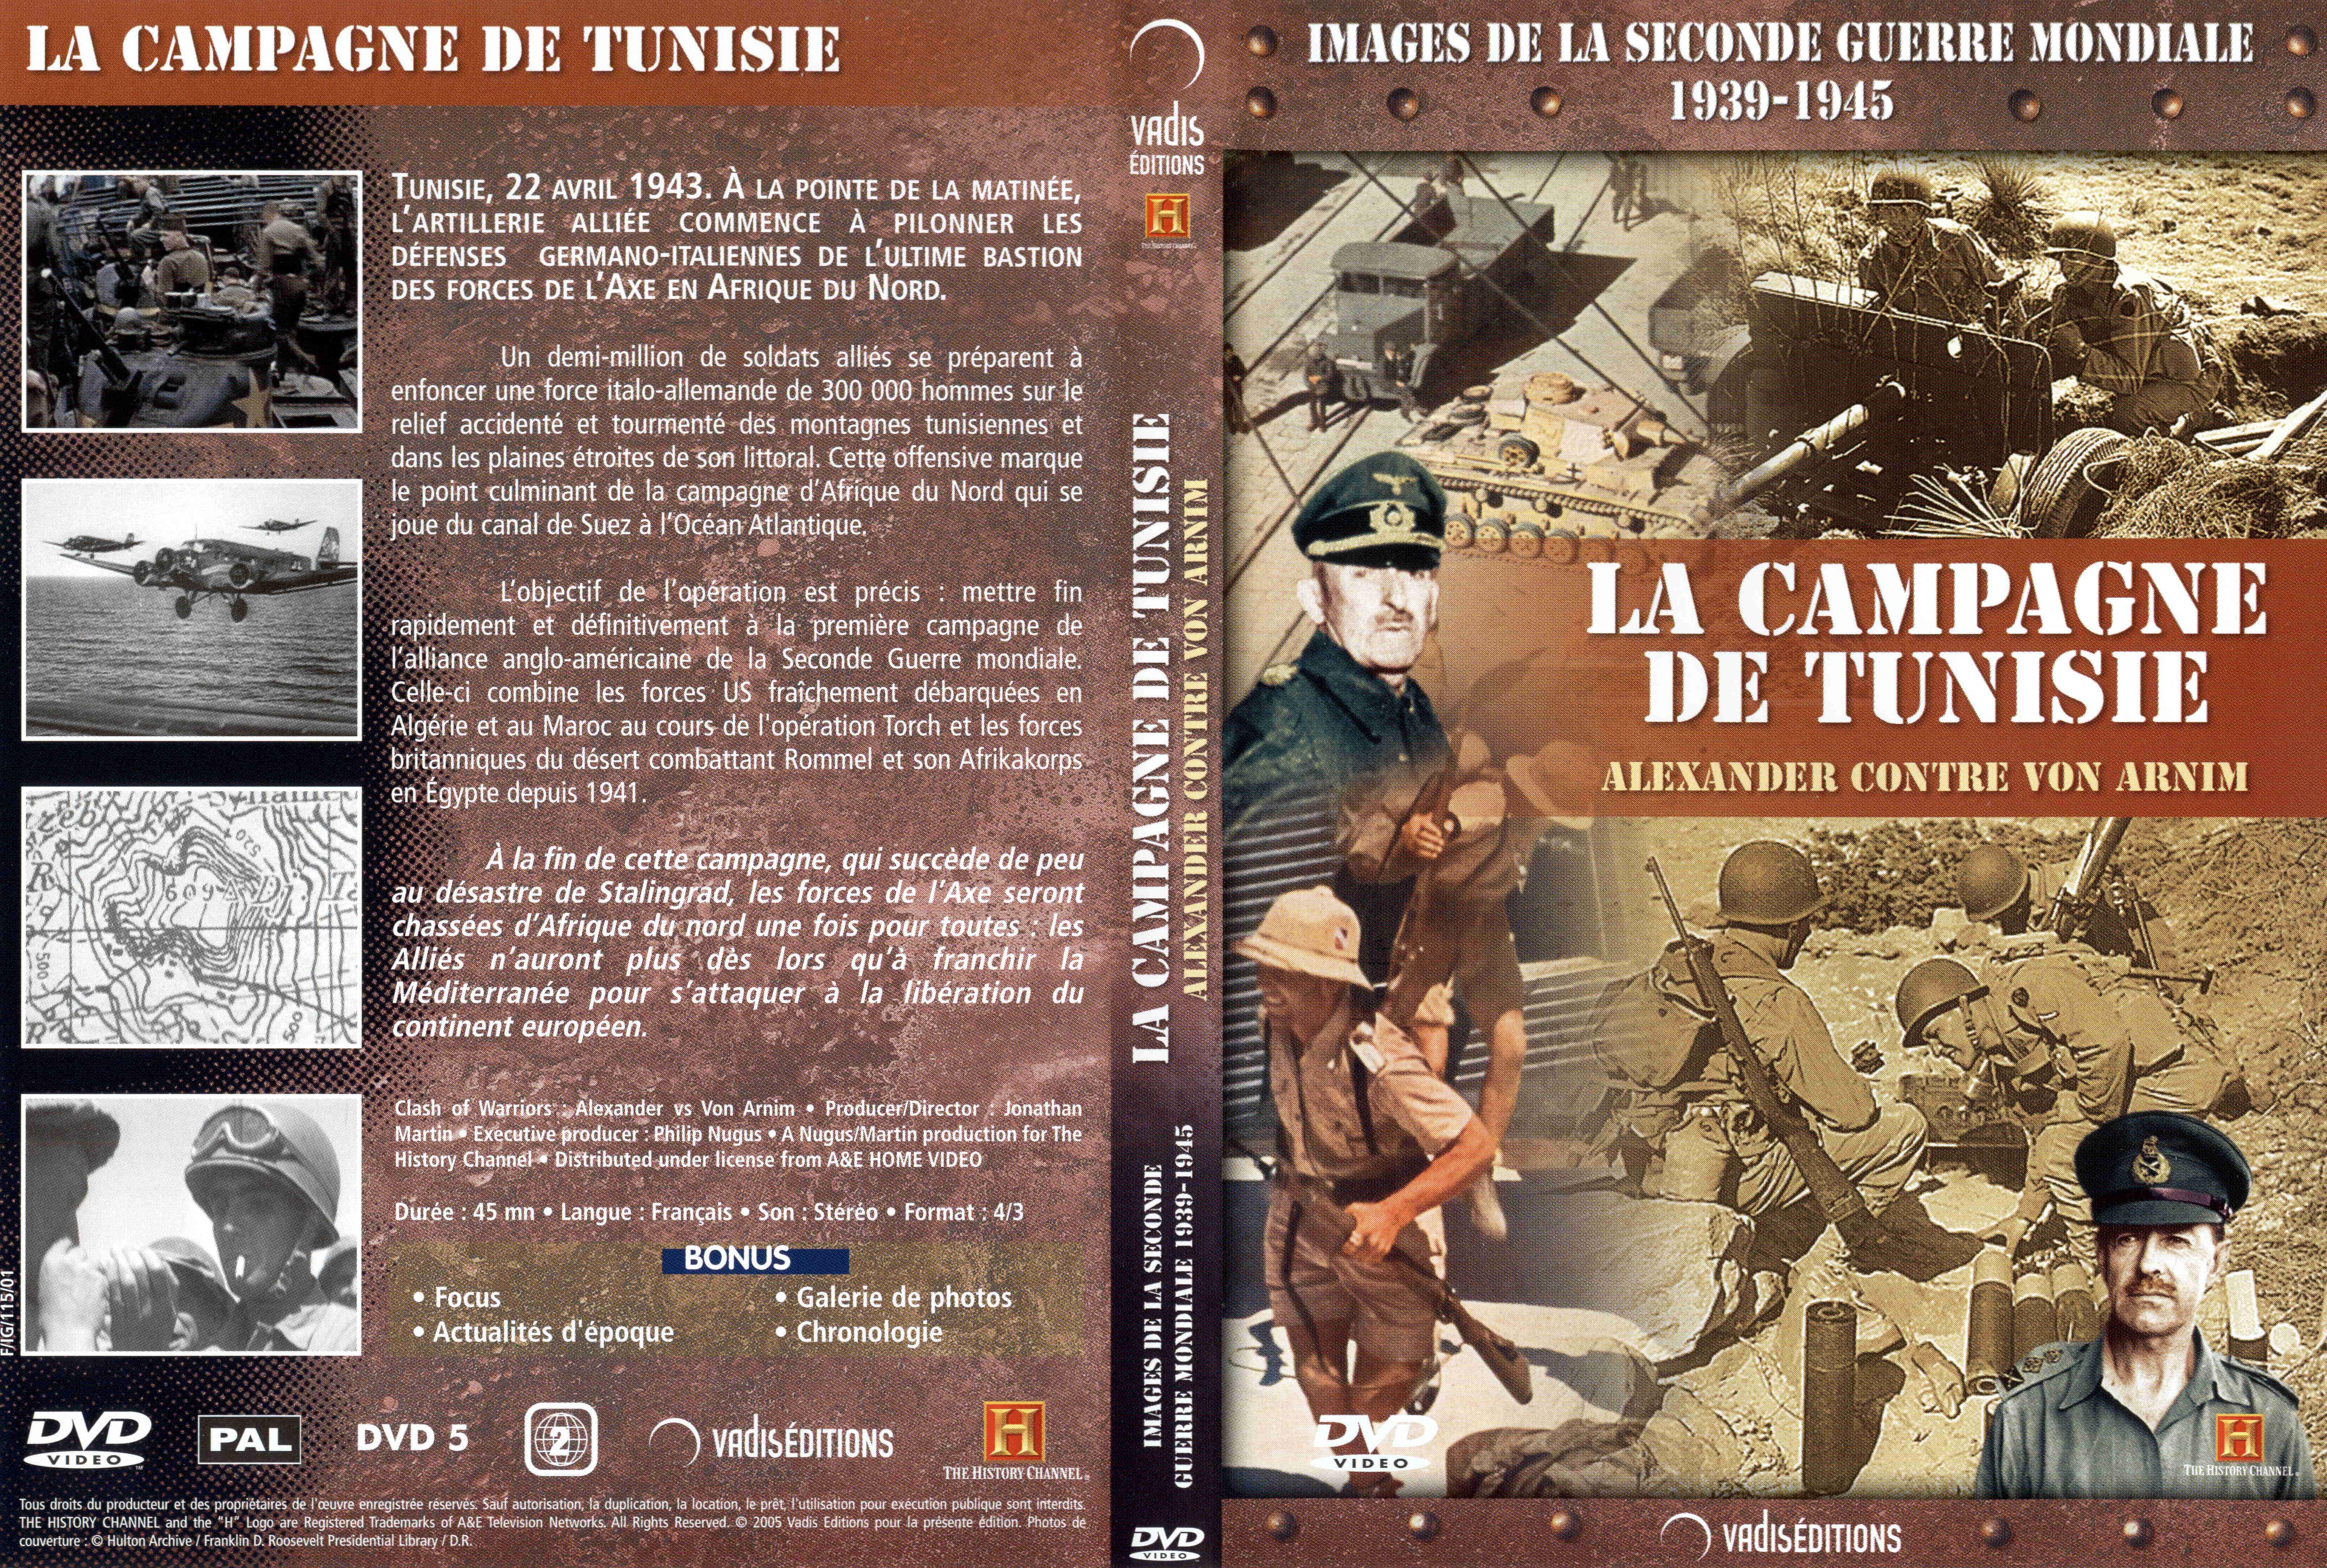 Jaquette DVD Images de la seconde guerre mondiale - La campagne de Tunisie